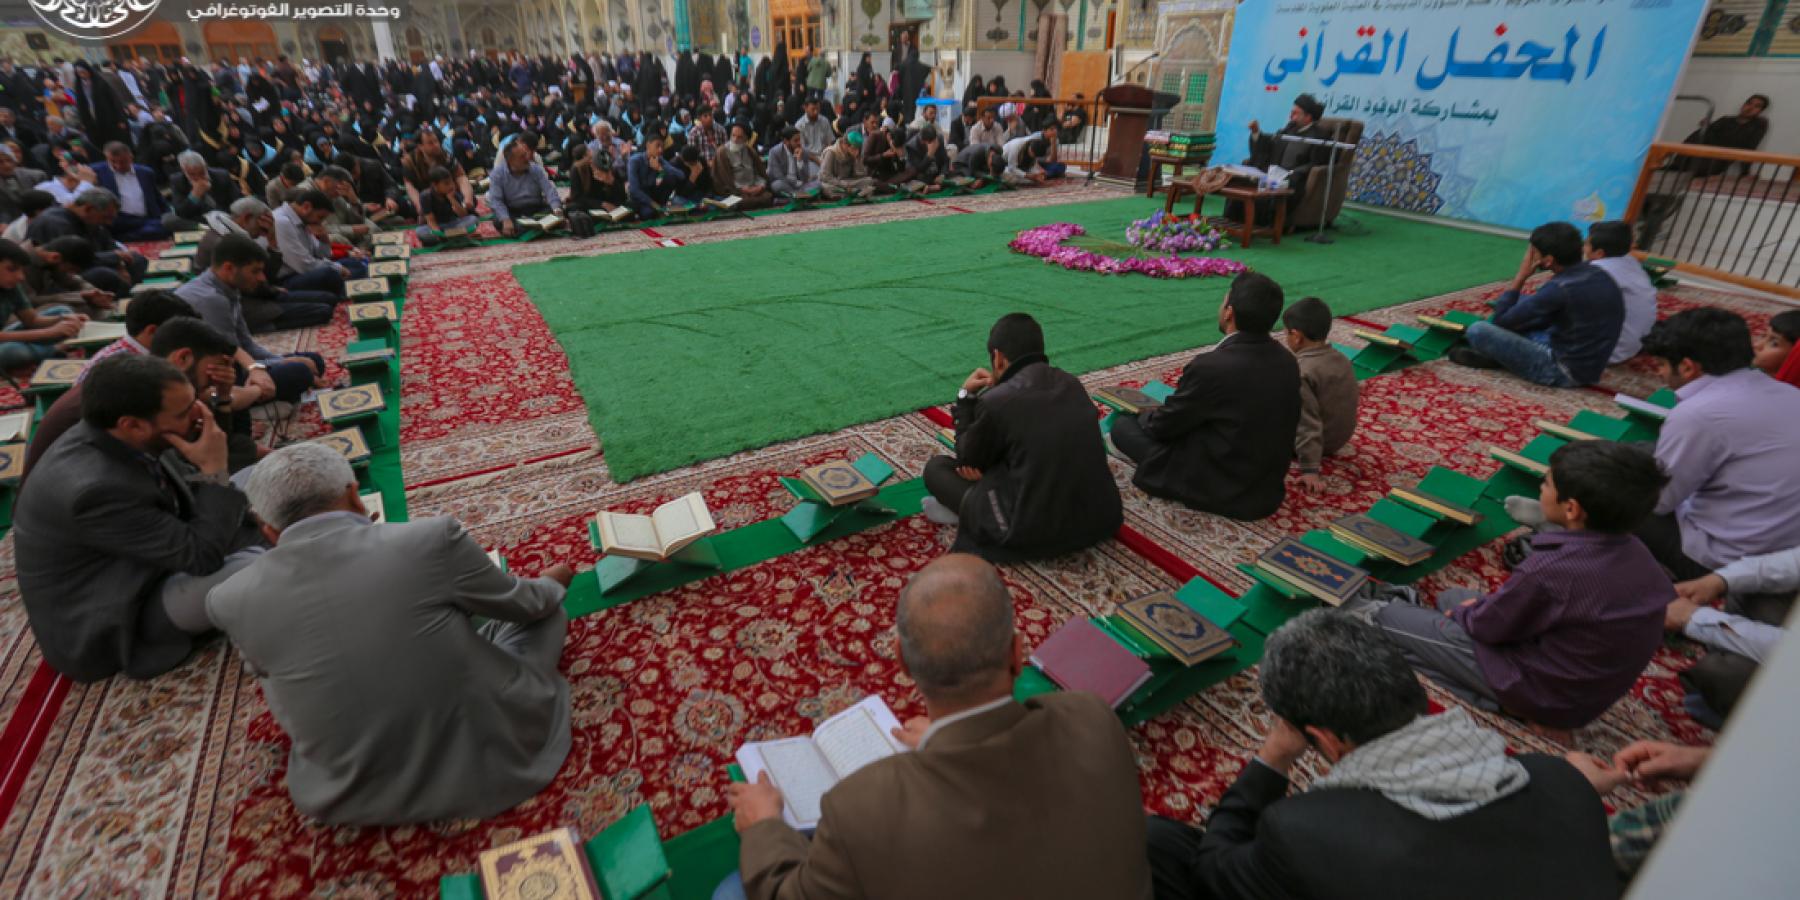 دار القرآن الكريم تقيم محفلاً قرآنياً باستضافة الكوادر النسوية القرانية من محافظة البصرة